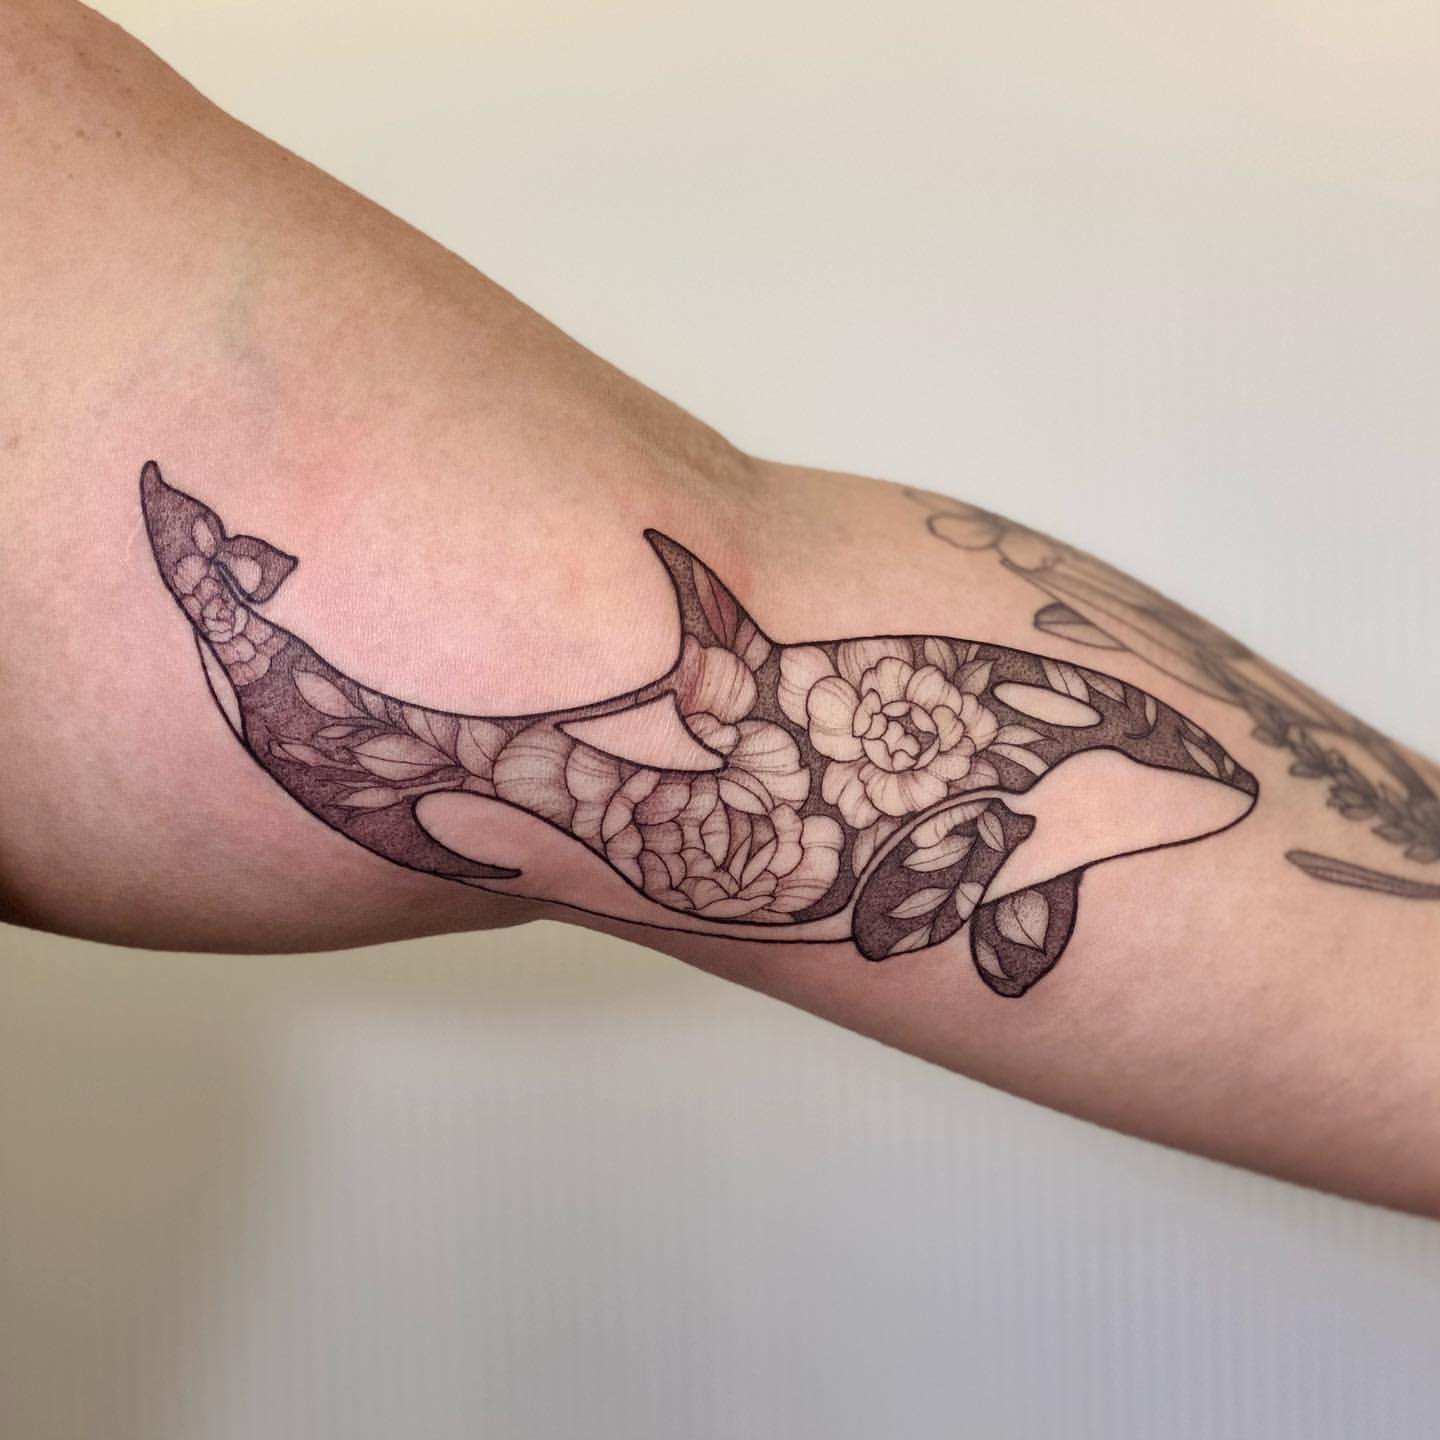 Orca Tattoo Ideas 20